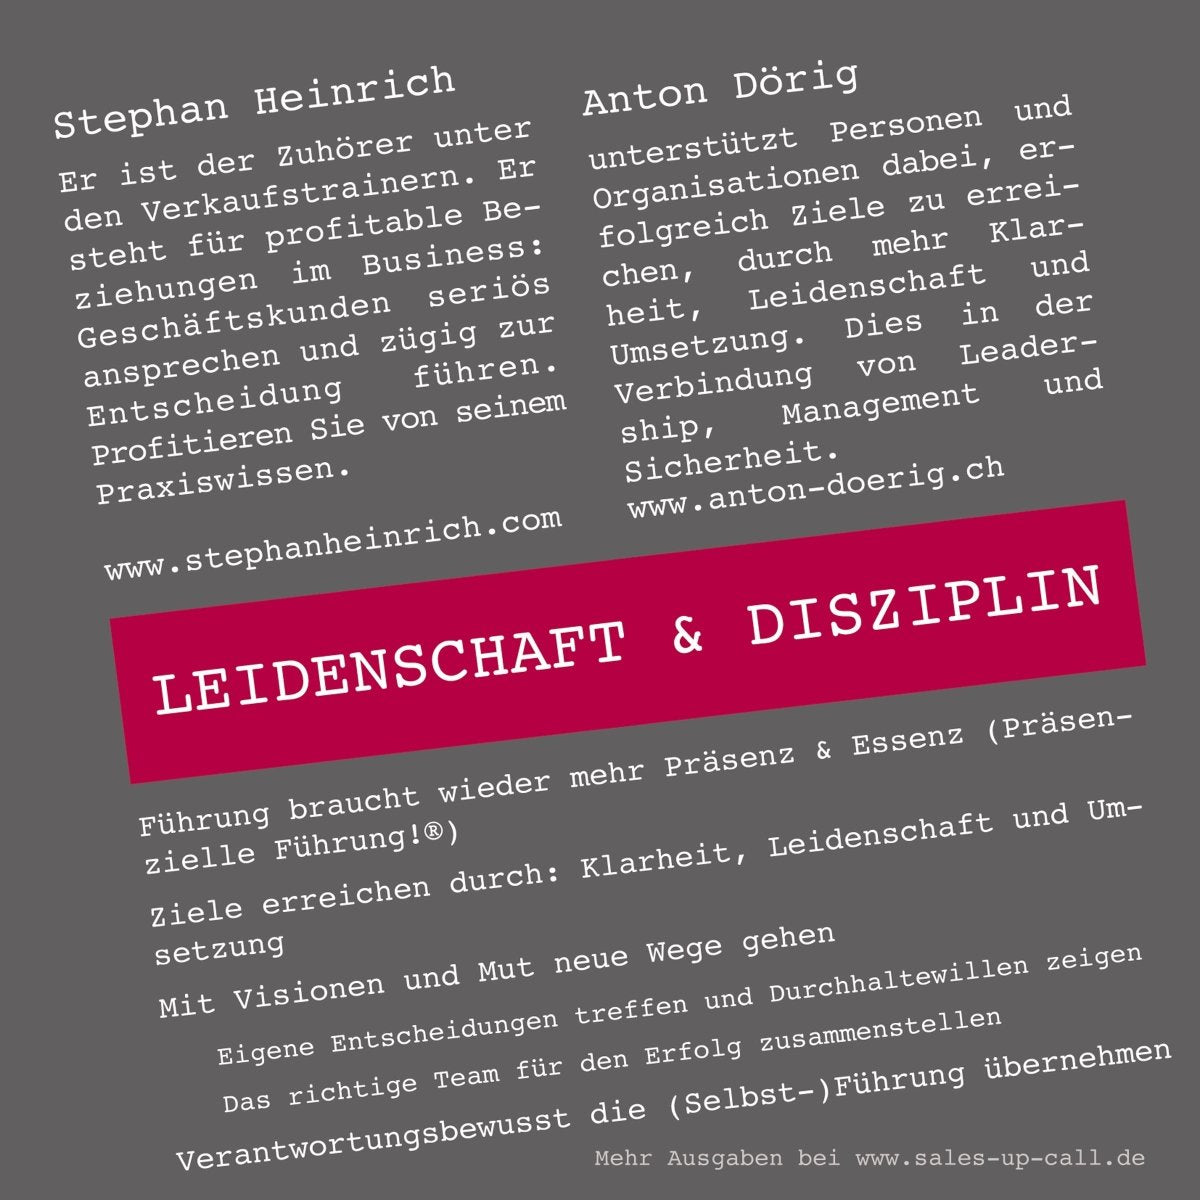 Leidenschaft & Disziplin - Sales-up-Call - Stephan Heinrich